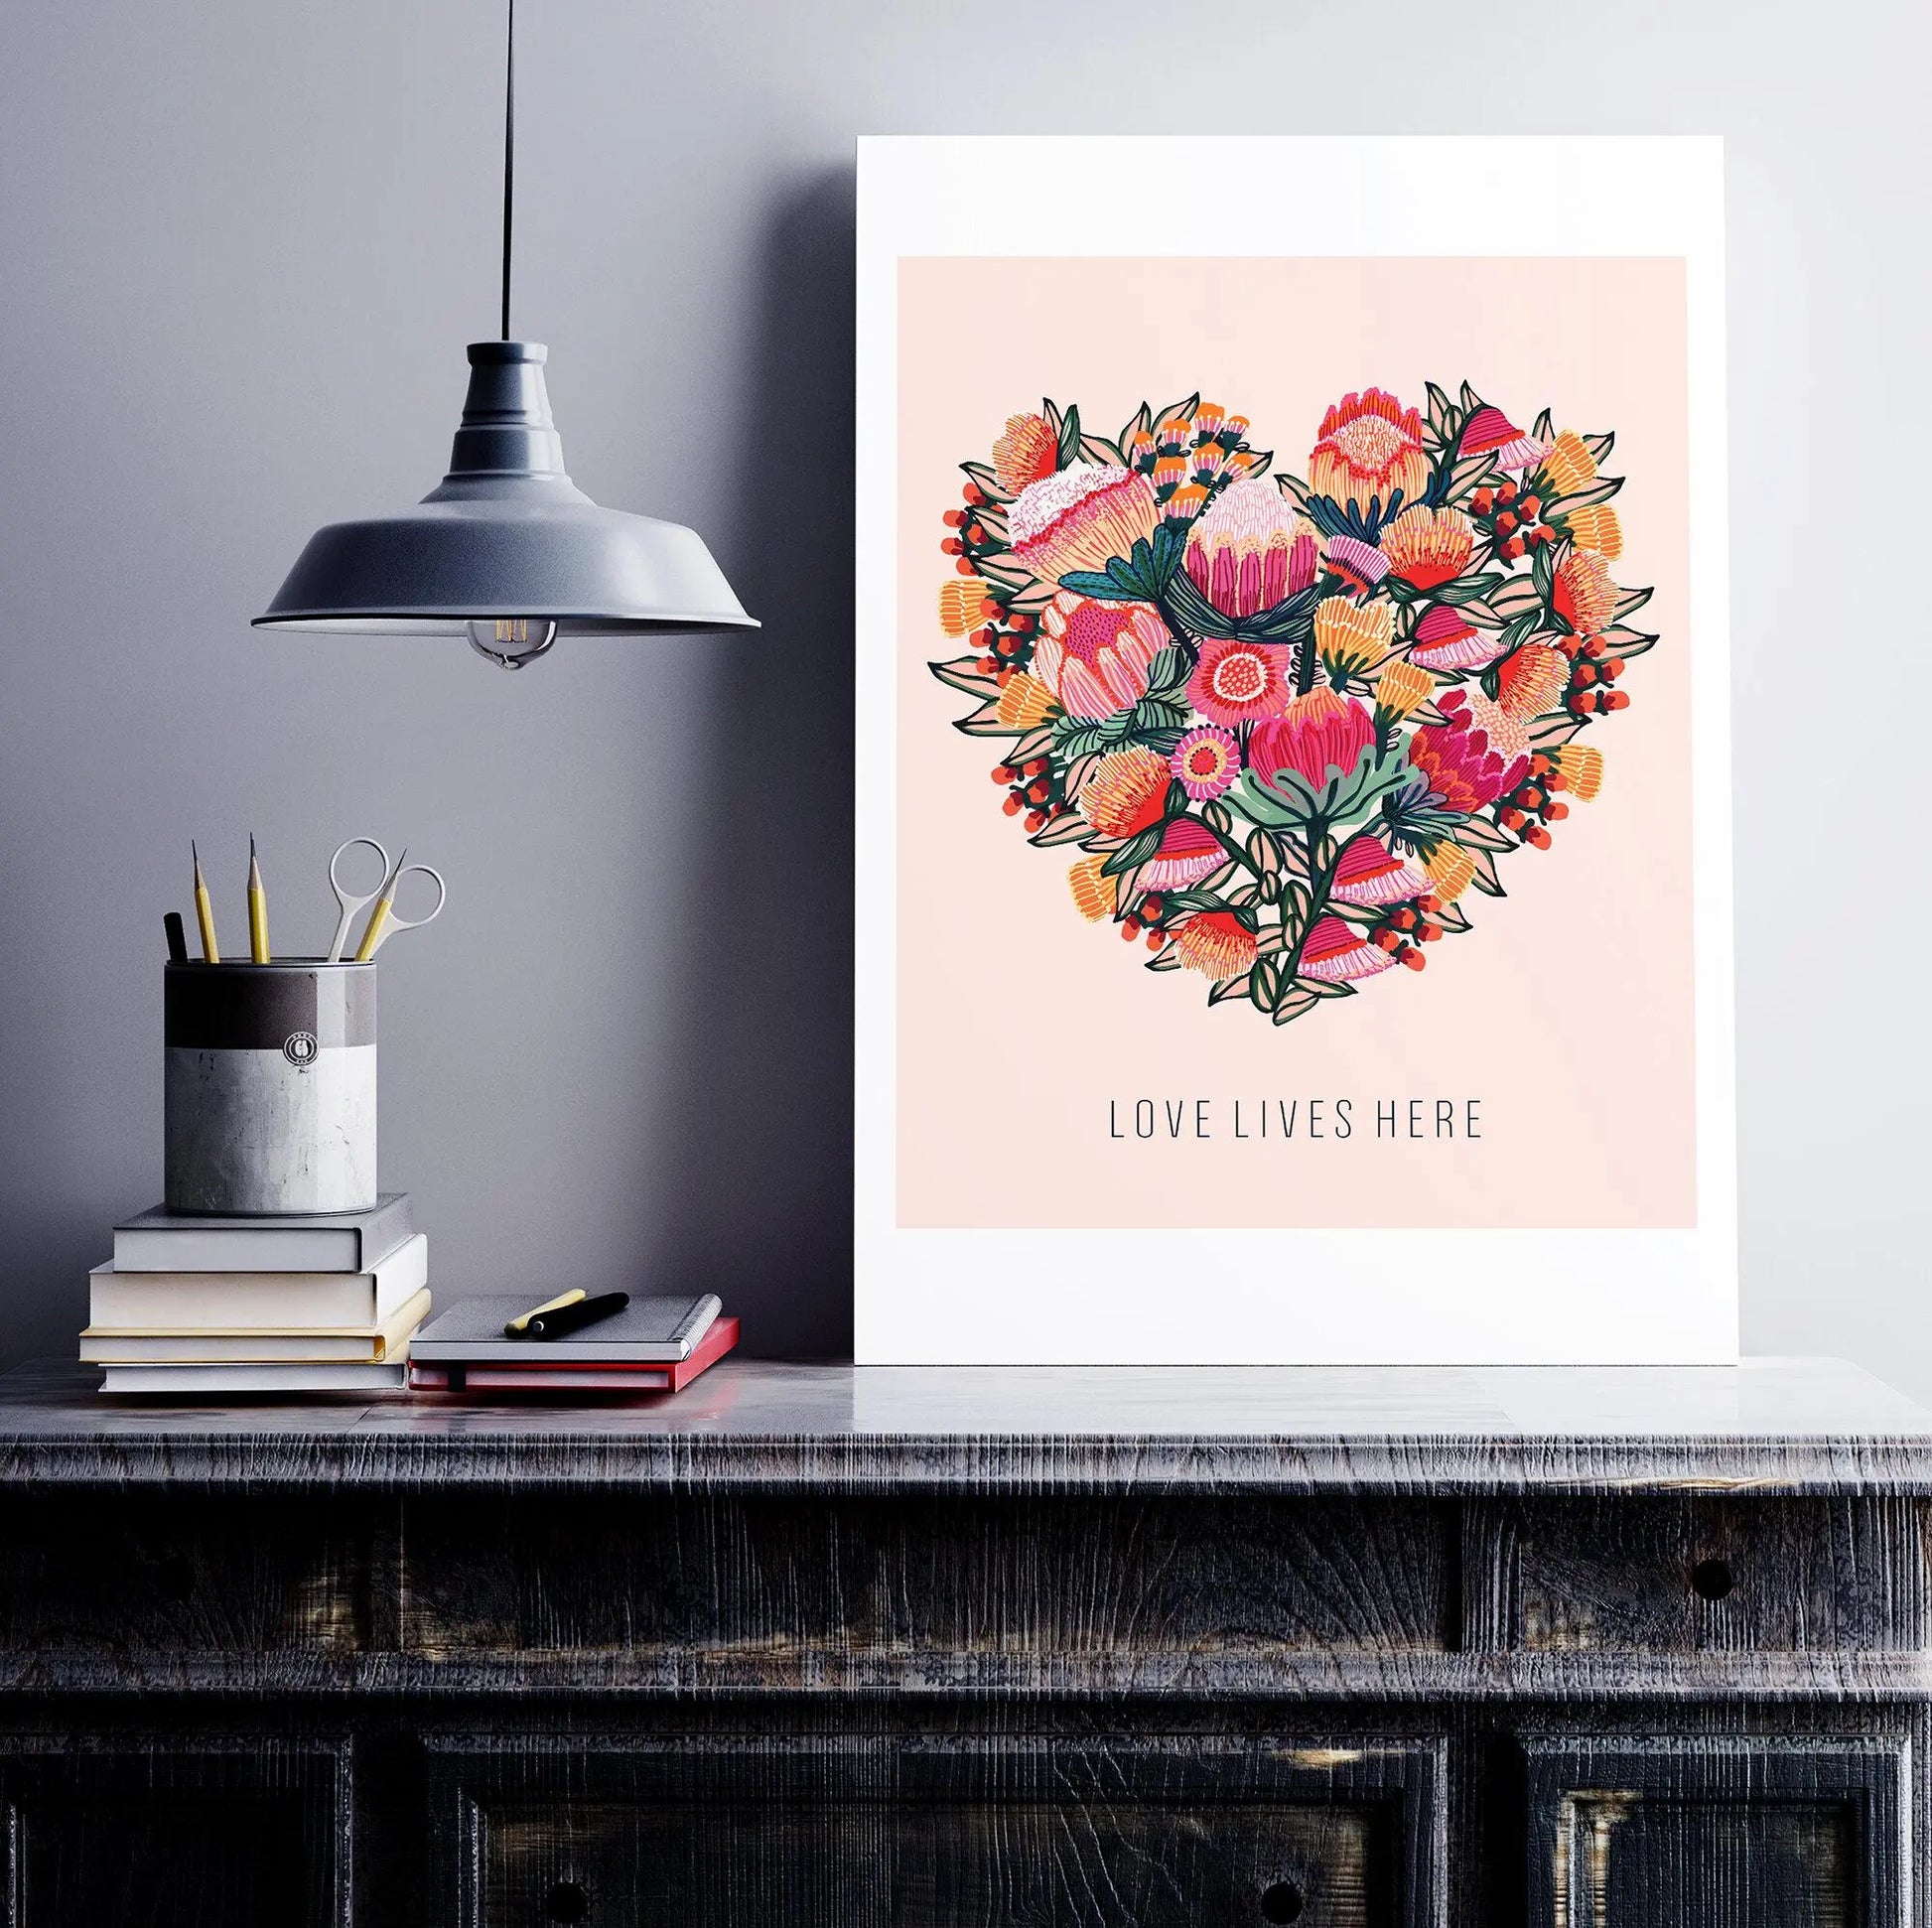 Love Lives Here Floral Heart  Art Print Kirsten Katz